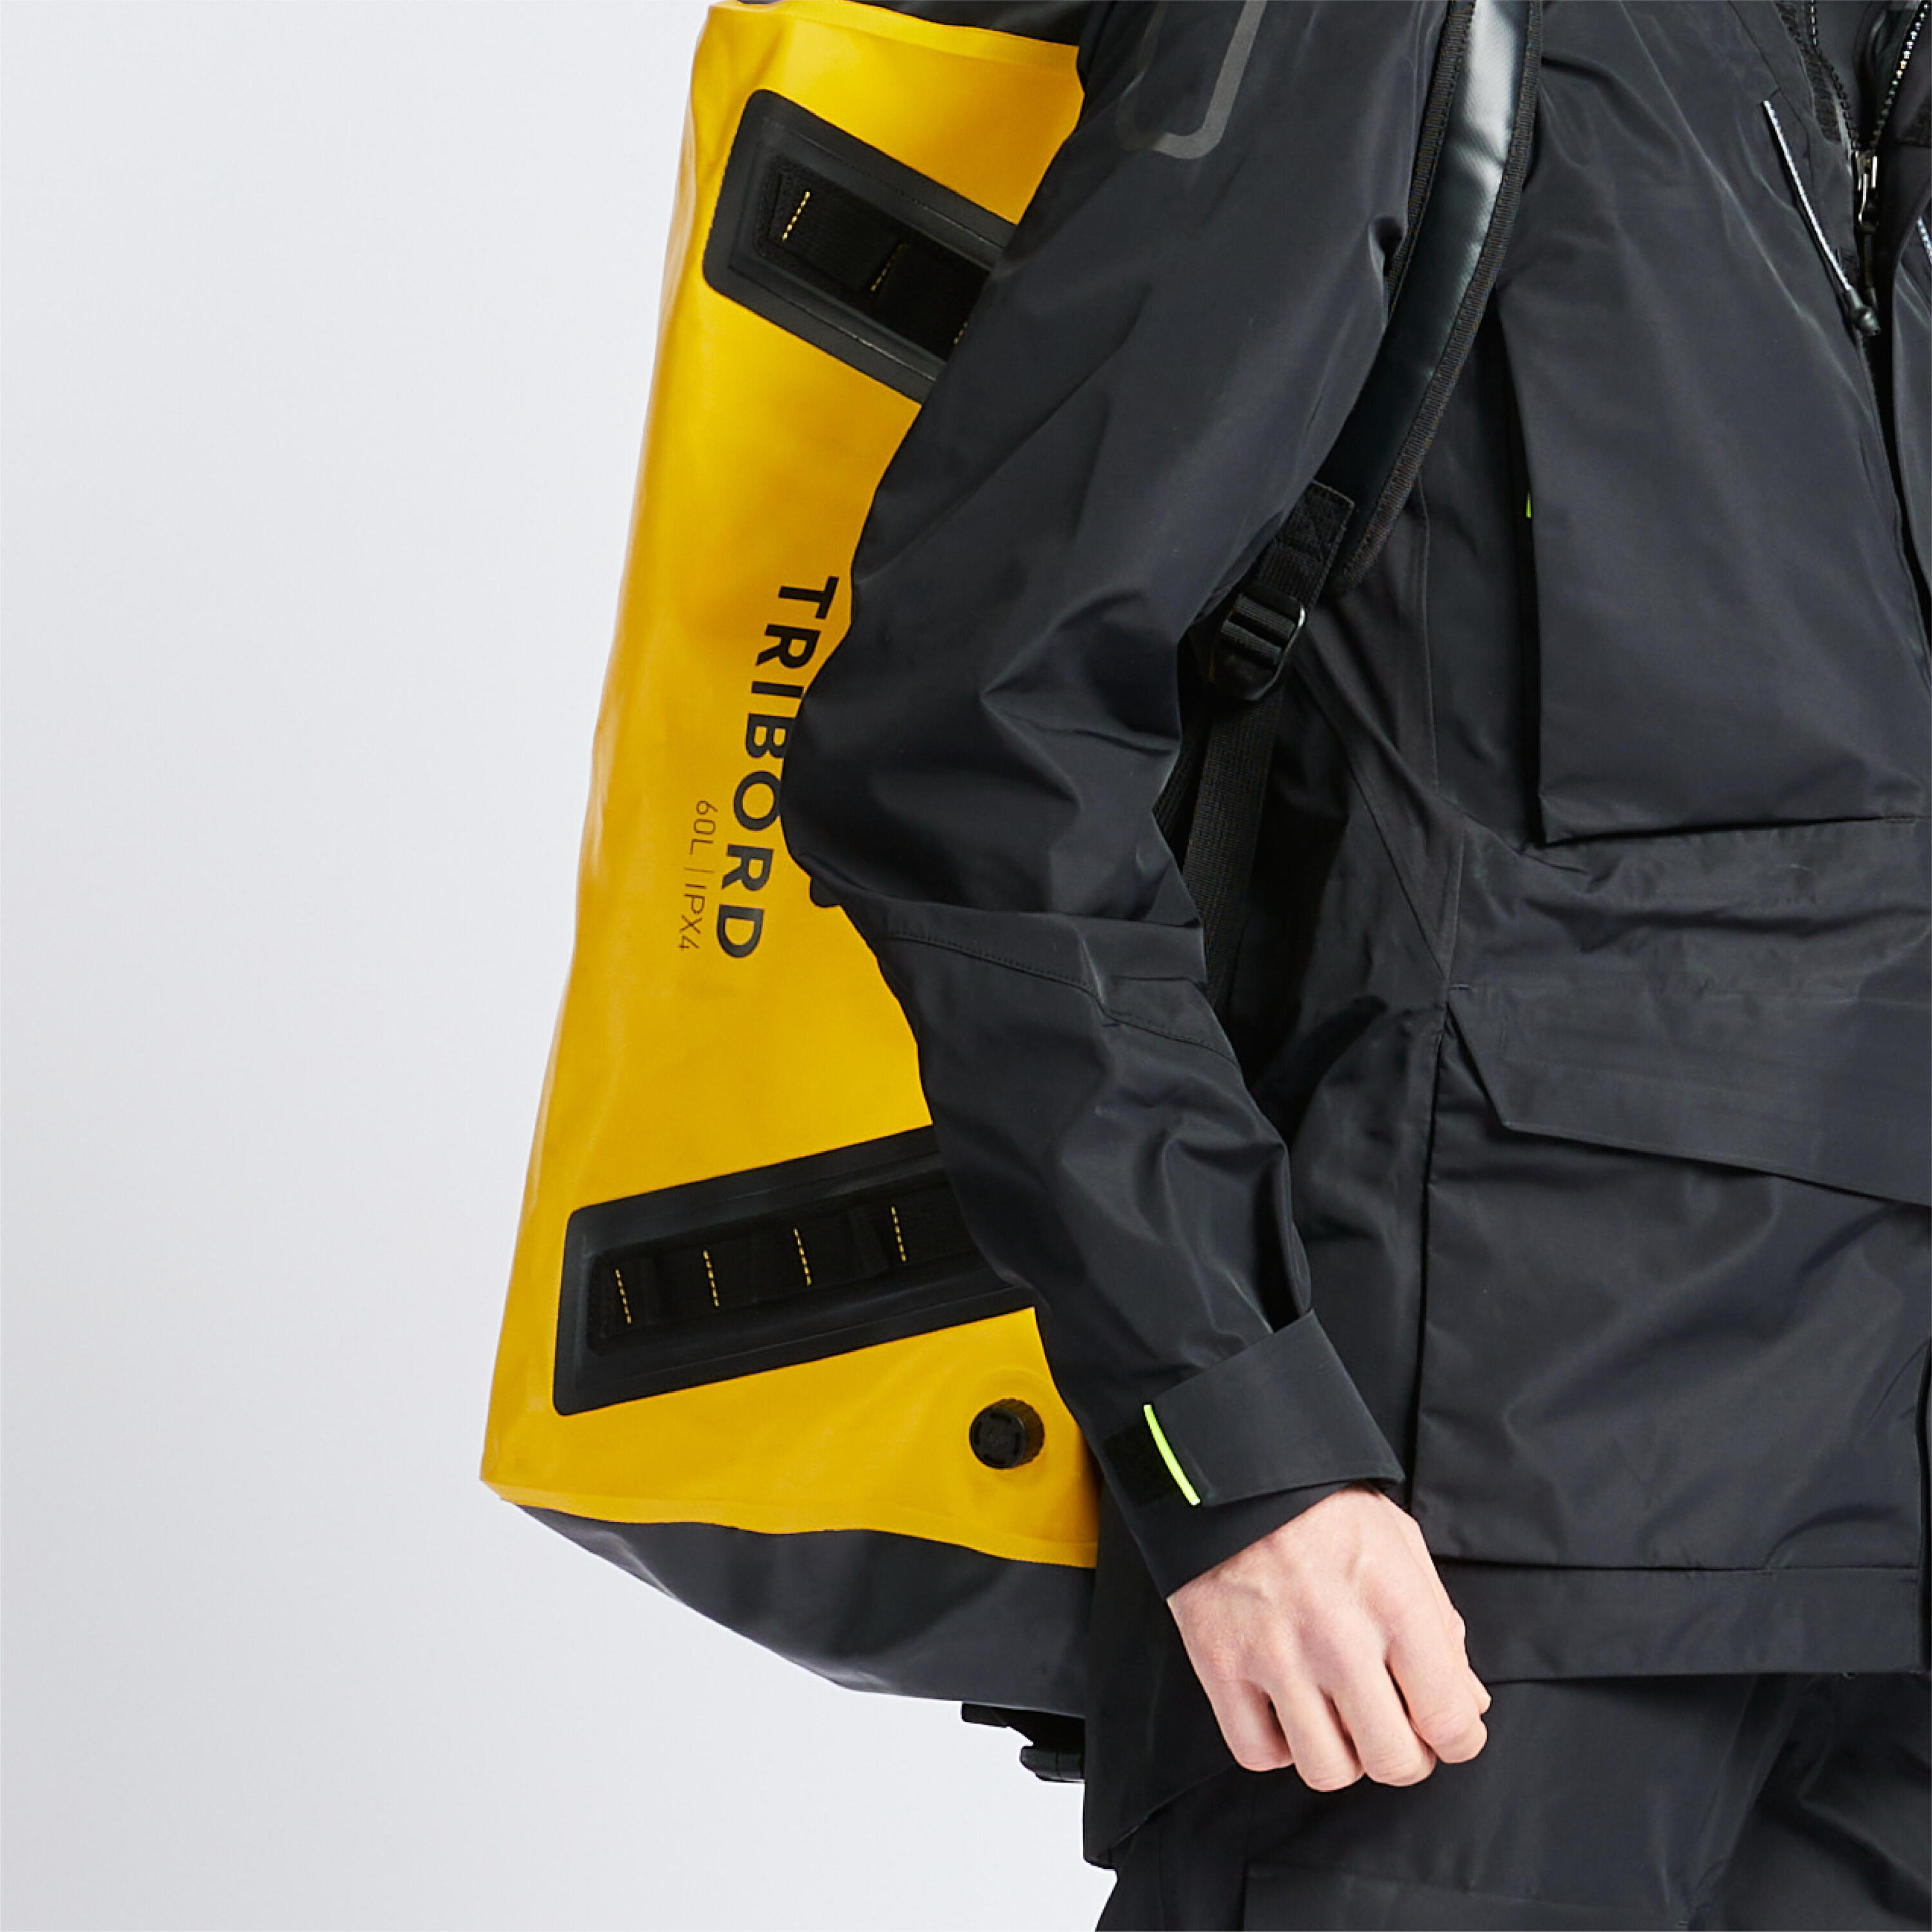 Waterproof duffle bag - travel bag 60 L yellow black 5/5